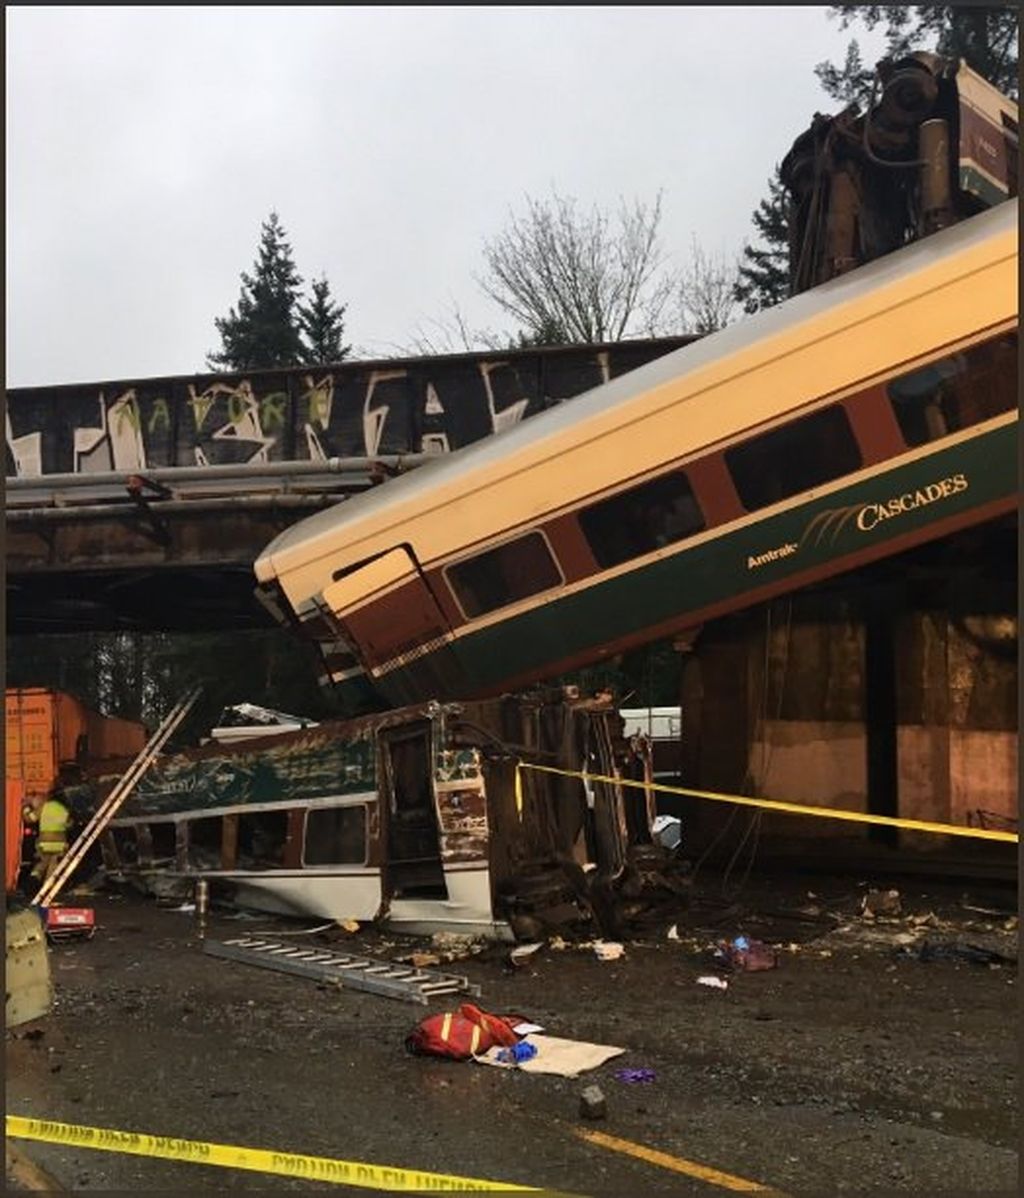 Imágenes del accidente tras el descarrilamiento de un tren en el estado de Washington